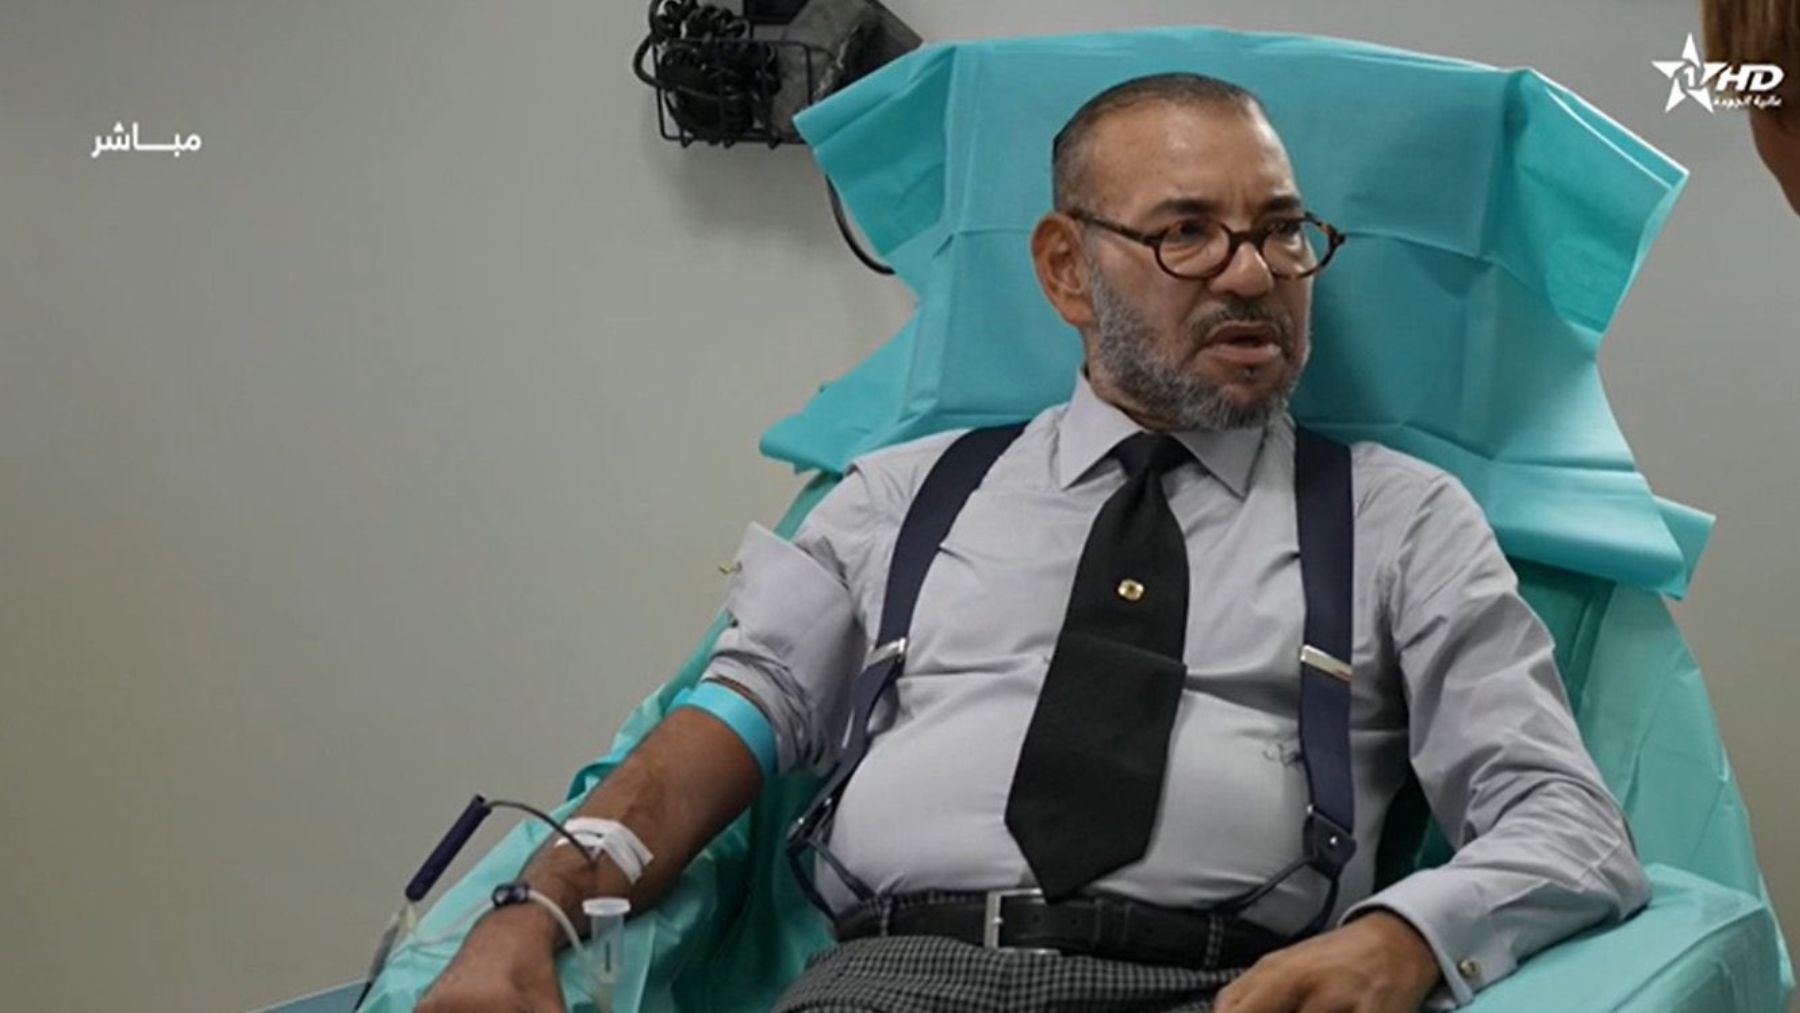 Mohamed VI dona sangre en el hospital para víctimas del terremoto.